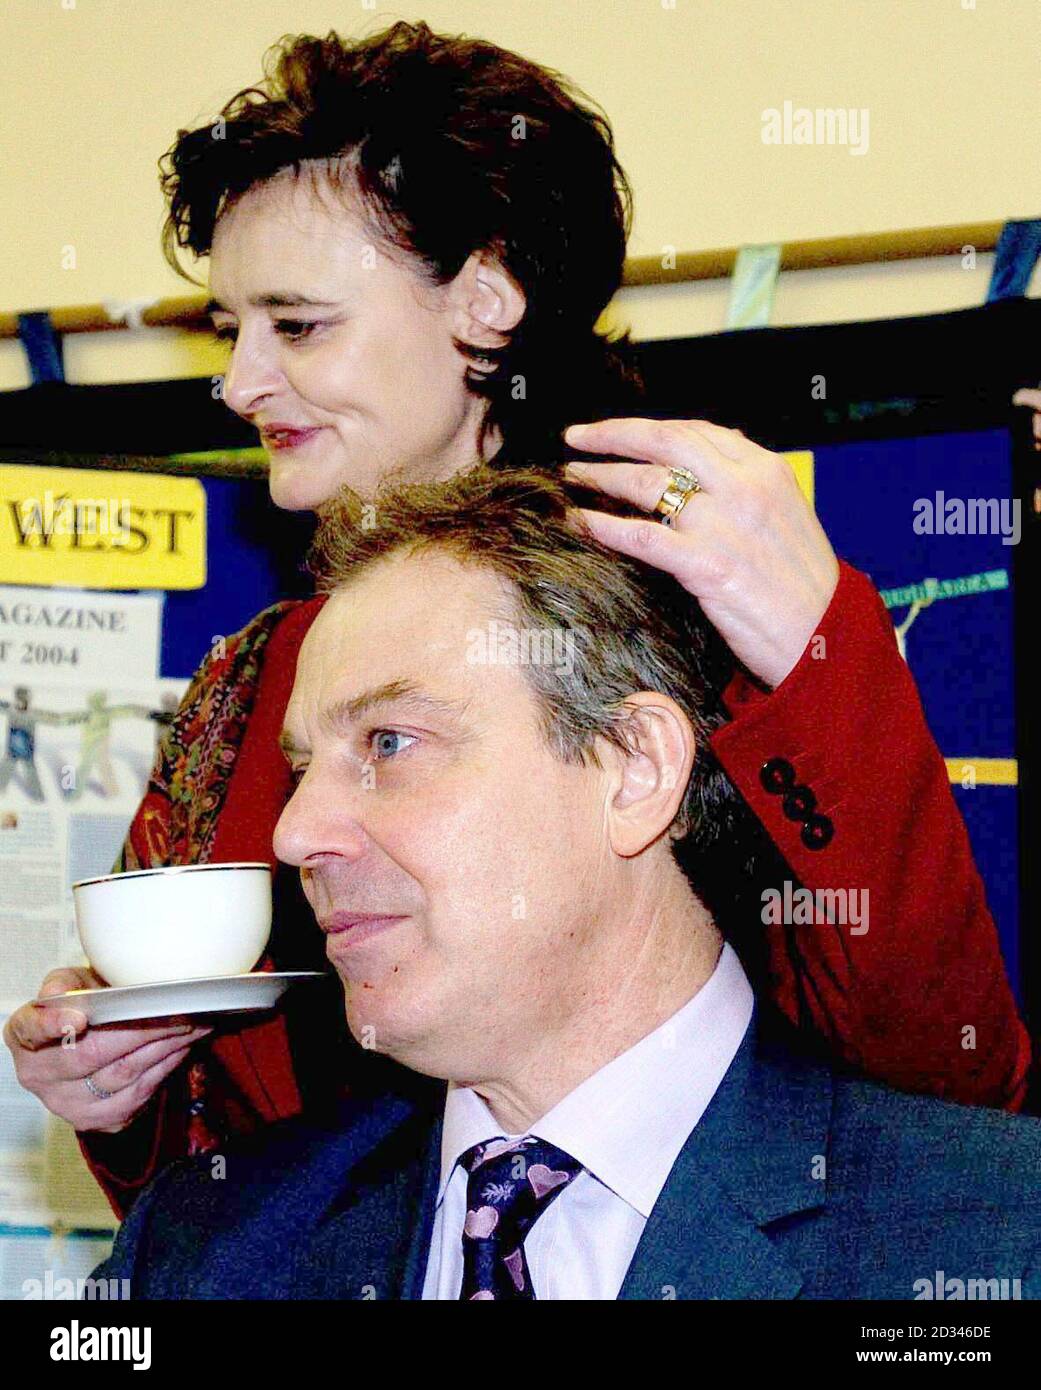 Premierminister Tony Blair schloss sich einer Kreditunion an, als er eine Reihe von Engagements in seinem Wahlkreis in Durham begann. Blair begann in Begleitung seiner Frau Cherie seinen Tag im Dorf Trimdon, wo er der örtlichen Kreditgenossenschaft beitrat. Als Herr Blair die offiziellen Mitgliedschaftspapiere unterschrieb, scherzte er: "Ich kann nicht sehen, was ich unterschreibe, ich habe meine Spezifikationen nicht." Seine Frau antwortete: "Ich bin Anwalt. Sie unterschreiben nichts, was Sie nicht gelesen haben. Stockfoto